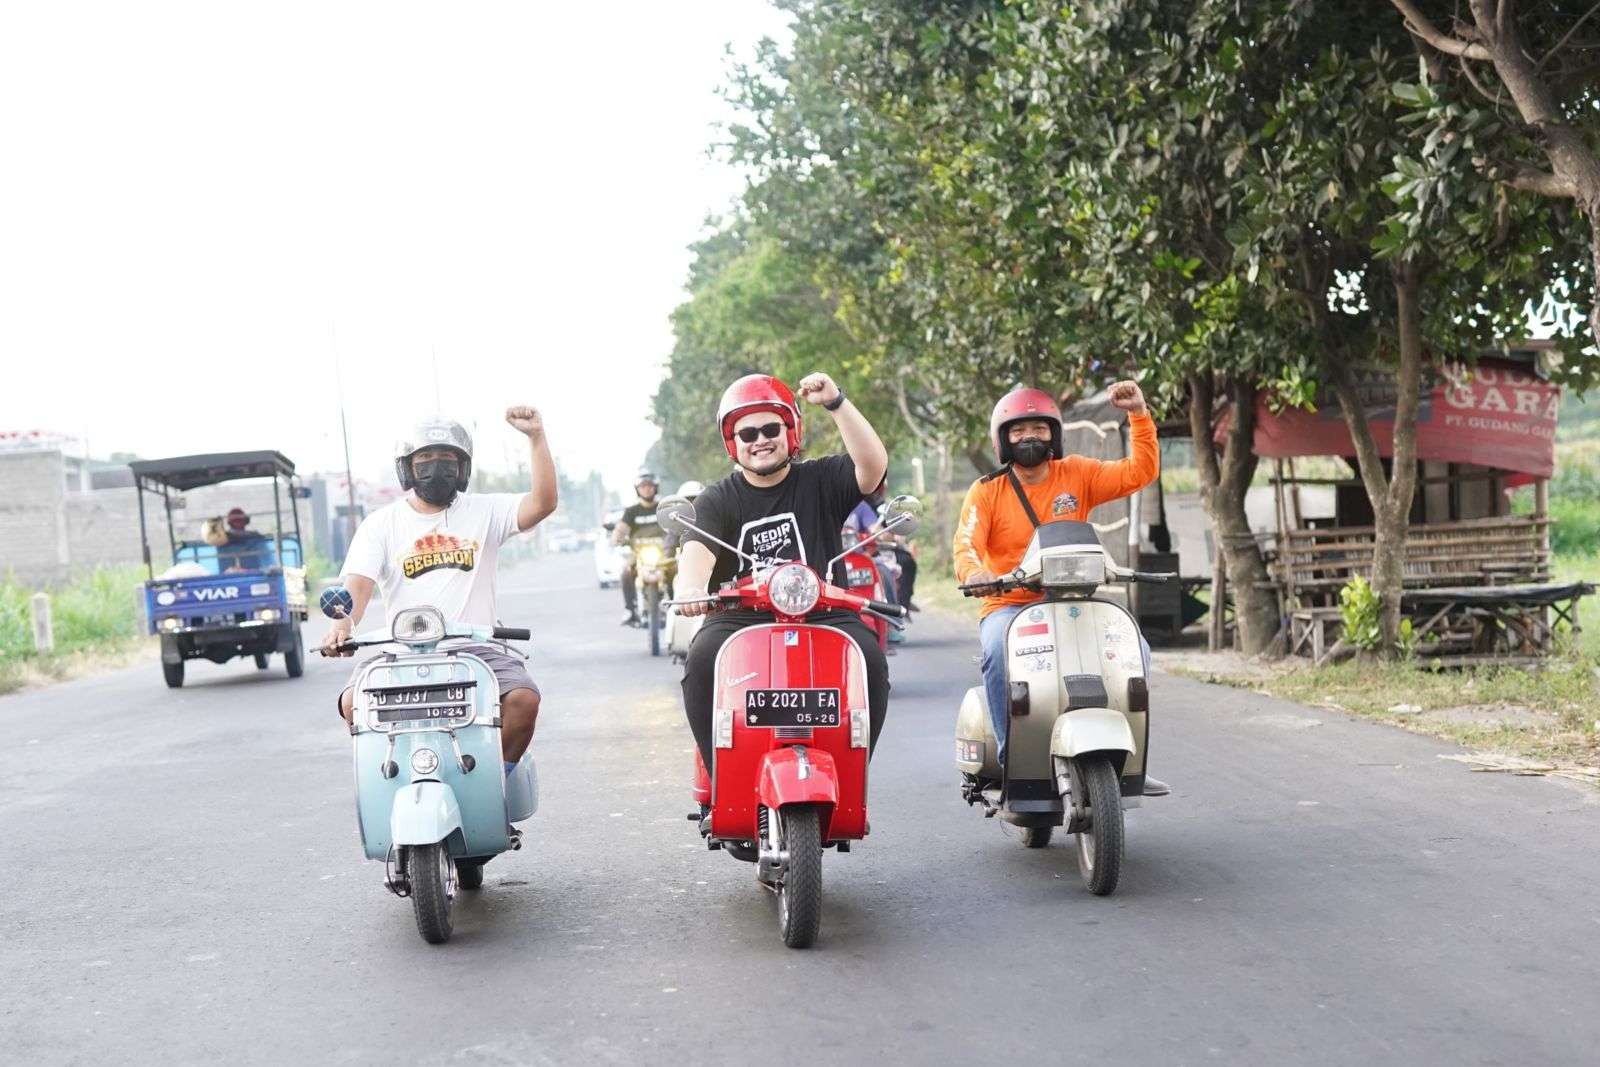 Bupati Kediri menggelar Panjalu Scooter Festival dengan sejumlah doorprize menarik. (Foto: Dokumentasi Kominfo Kediri)